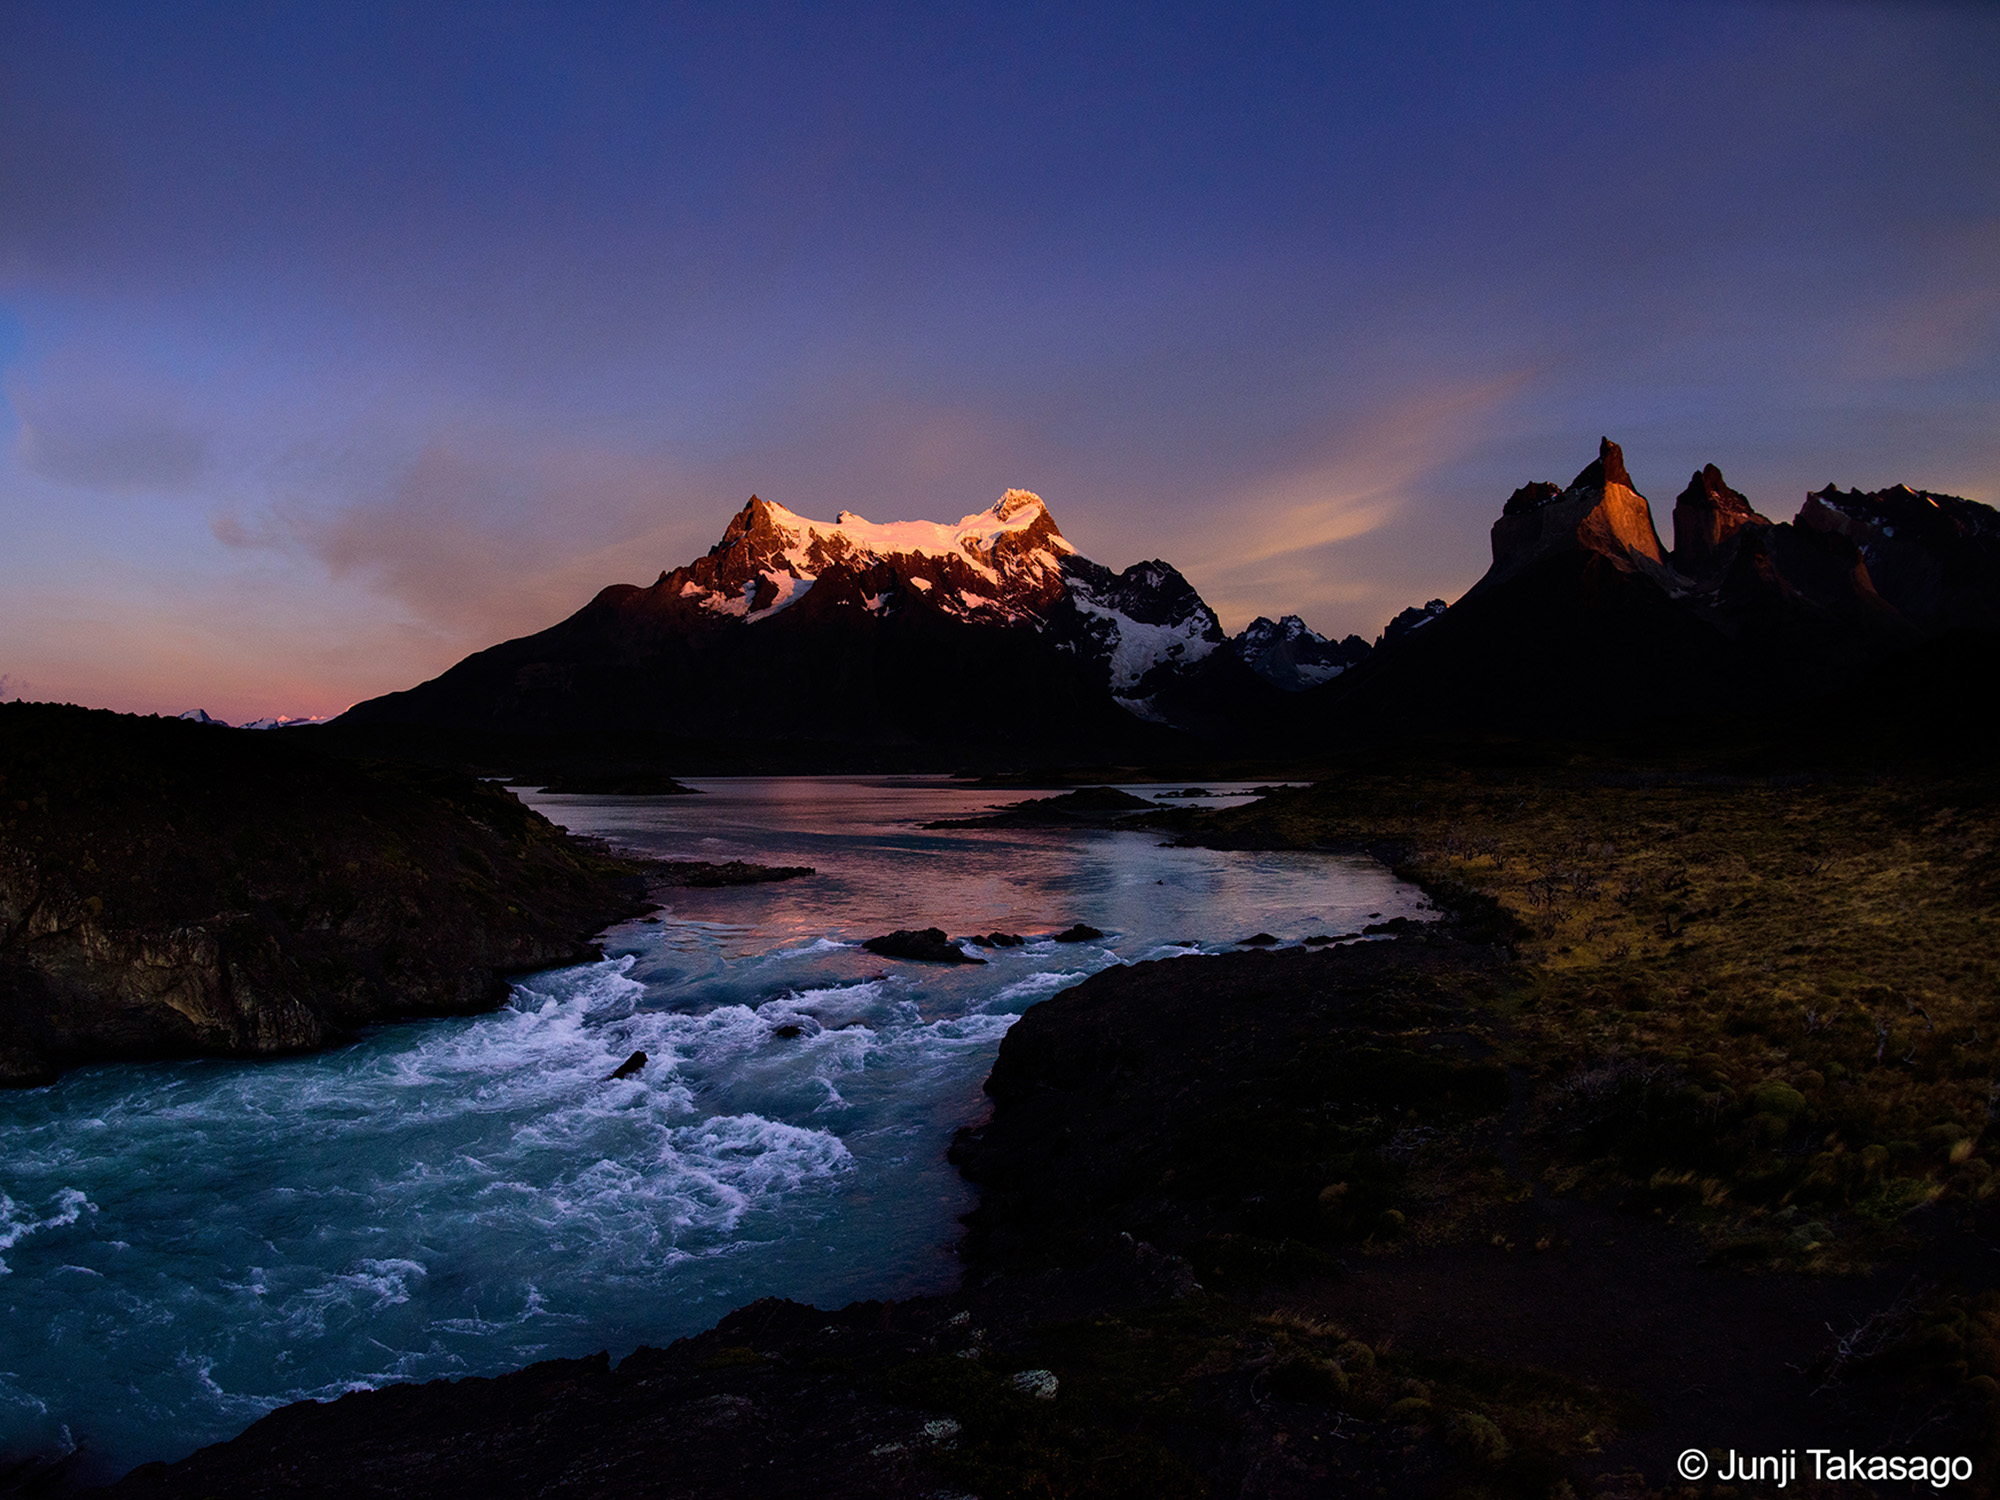 Ríos patagónicos: Un ecosistema en movimiento